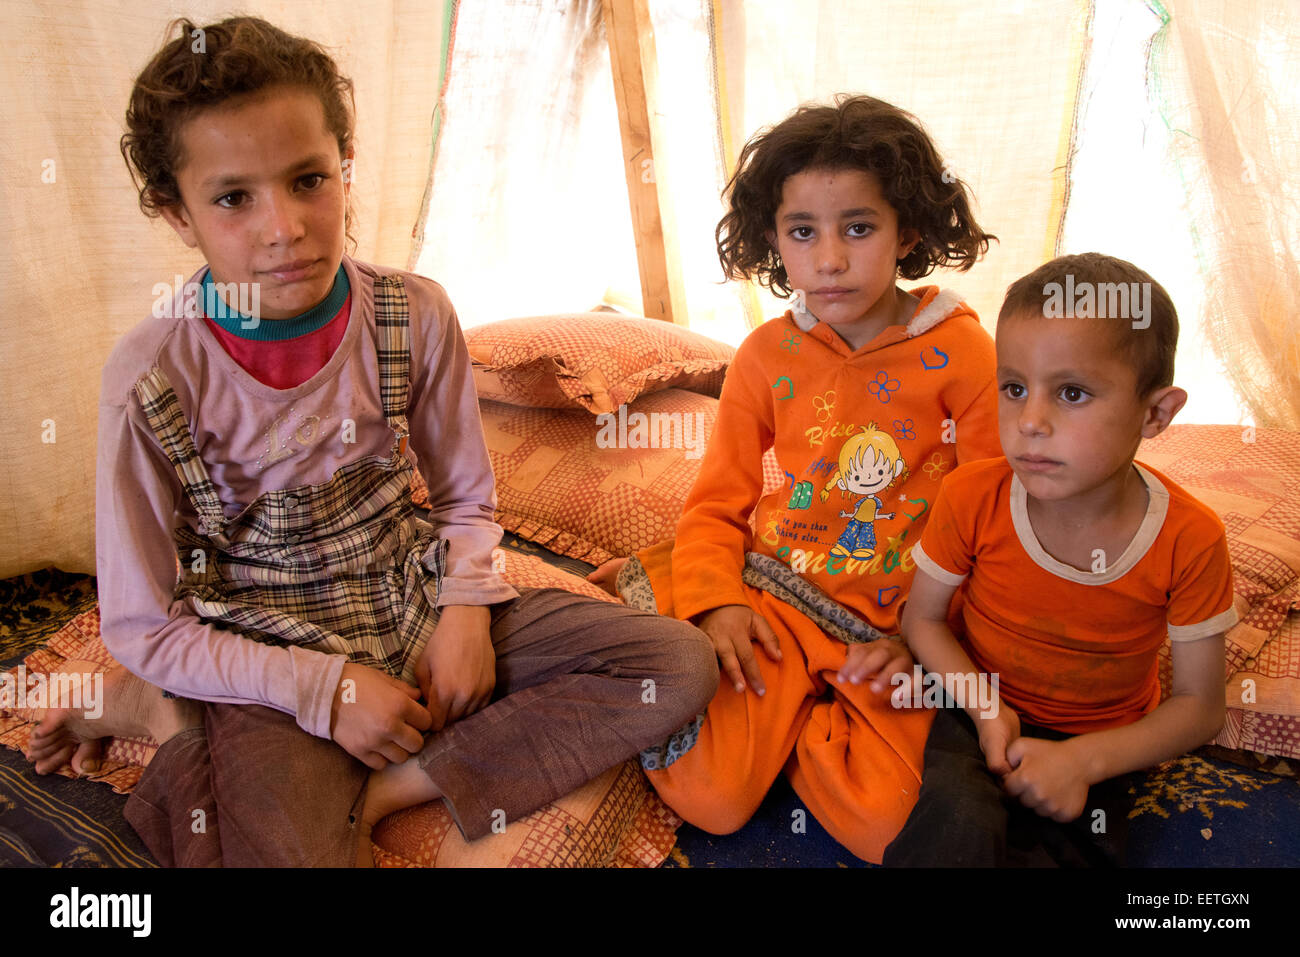 Syrian refugee children Lebanon Stock Photo